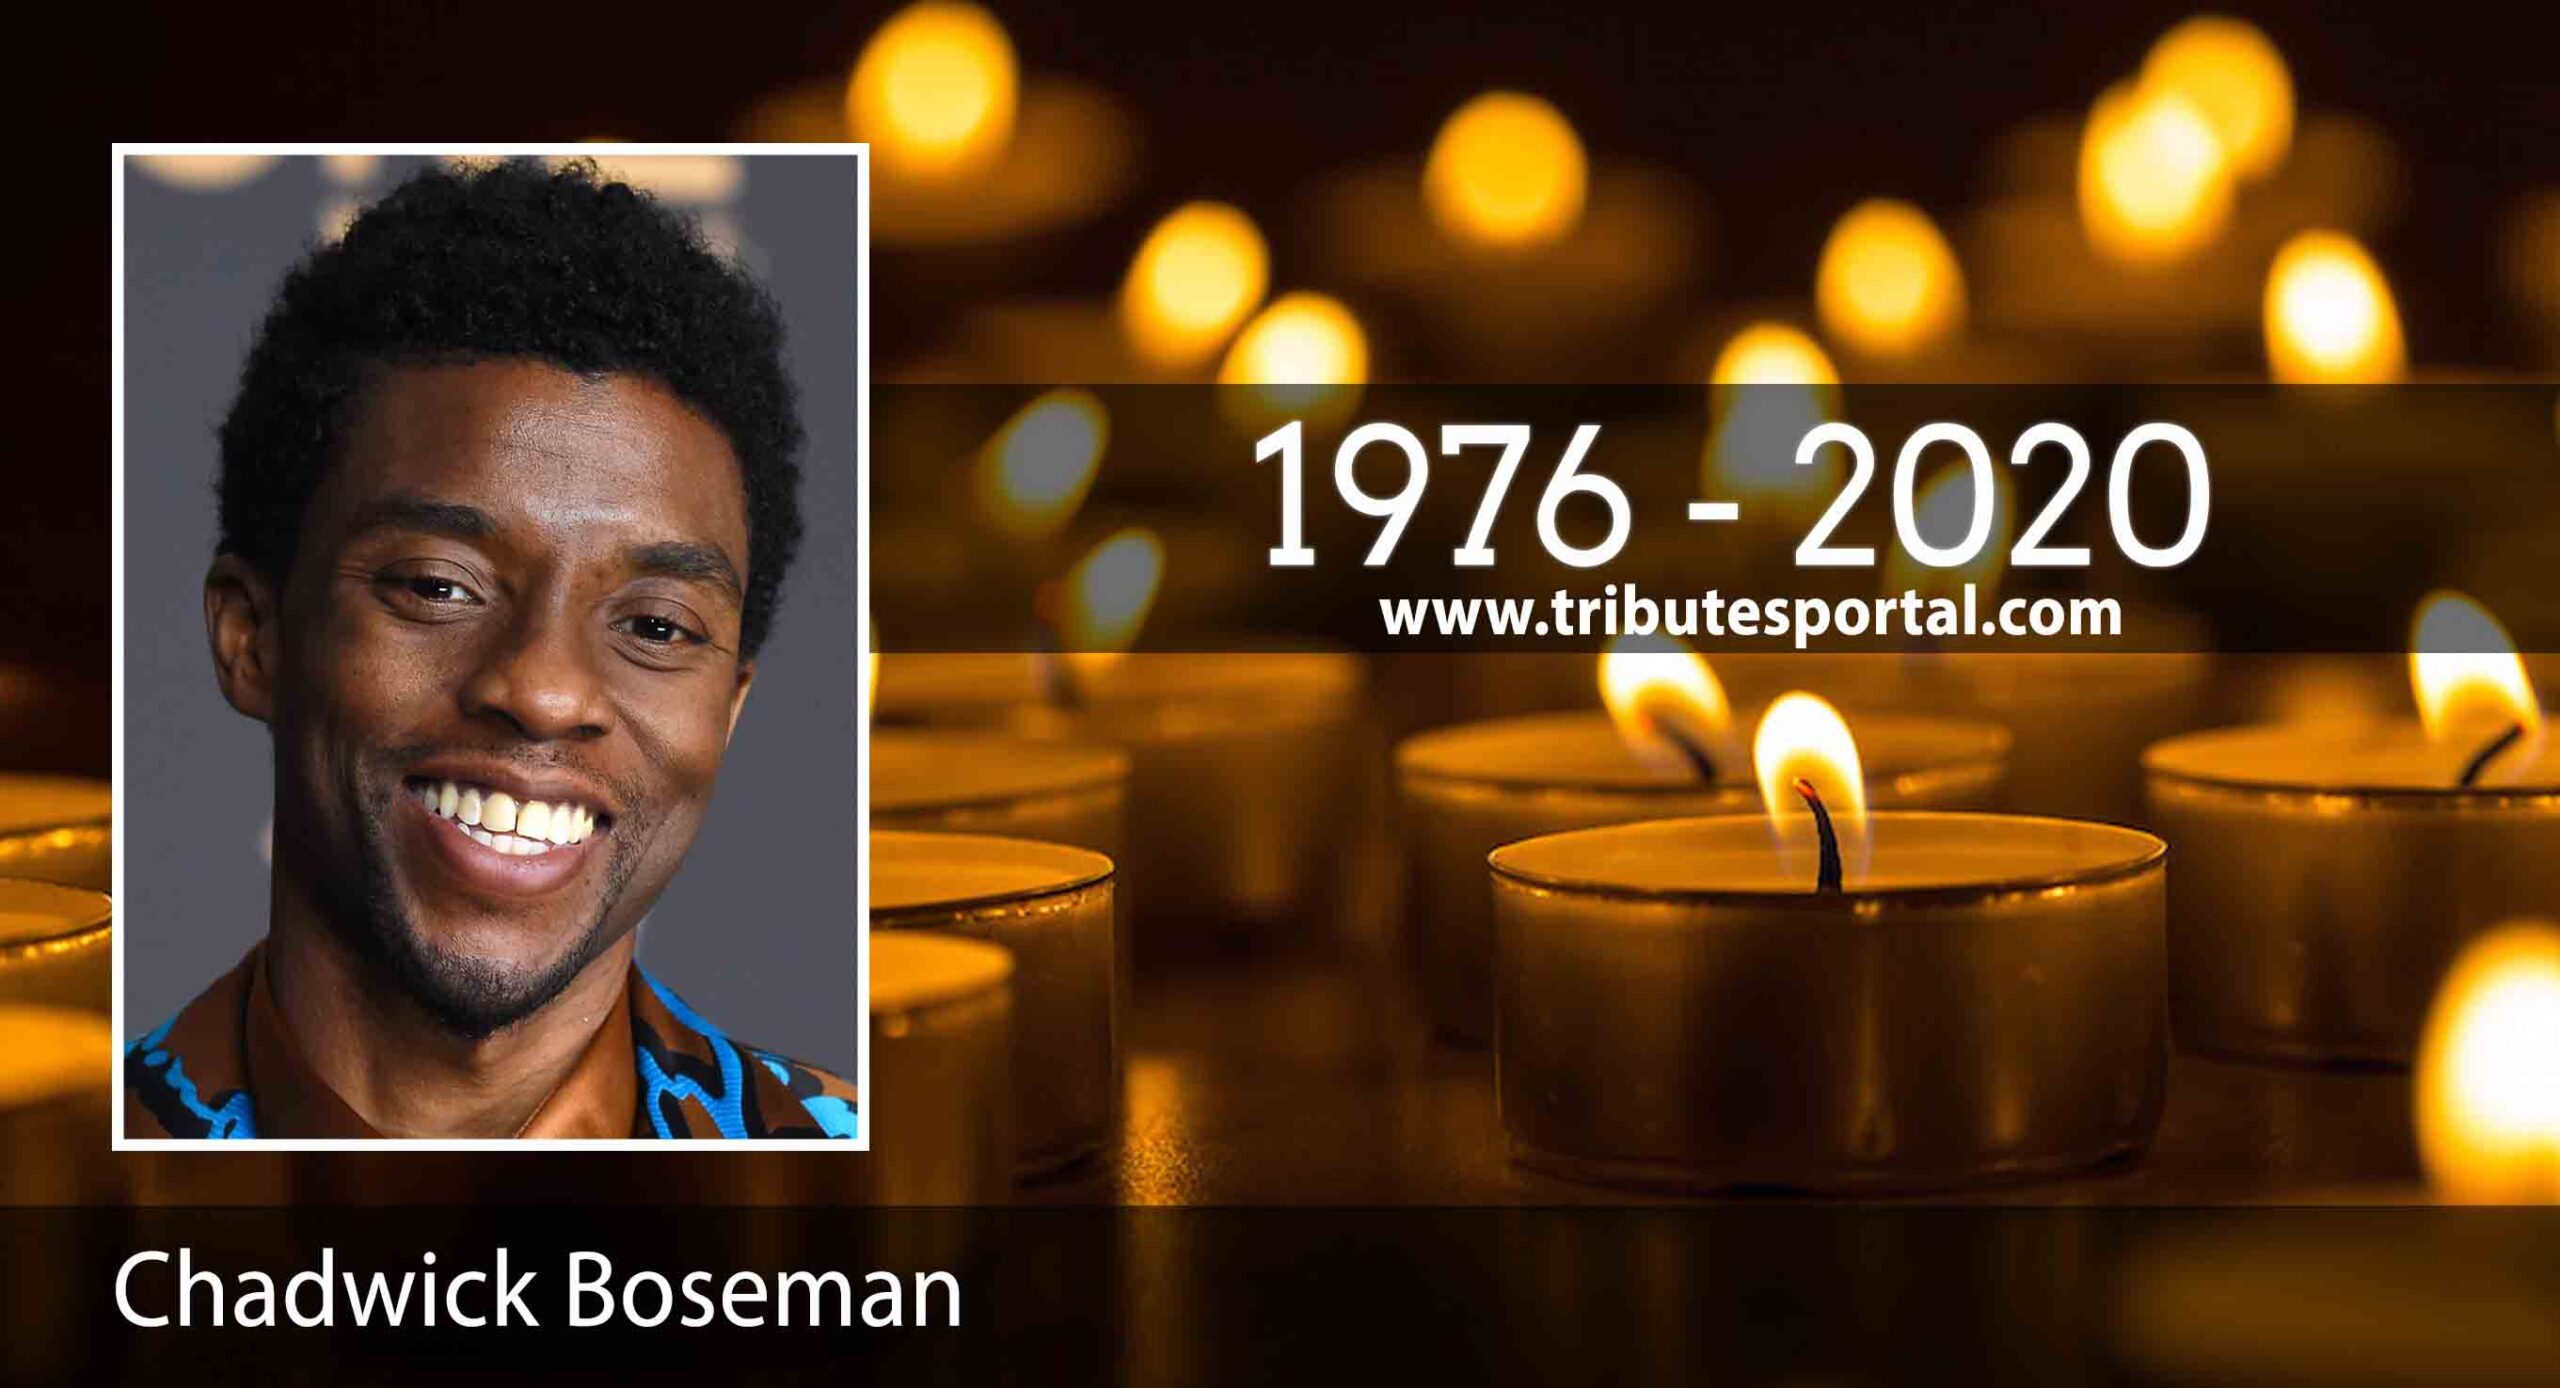 Black Panther Hero, Chadwick Boseman dies at 43